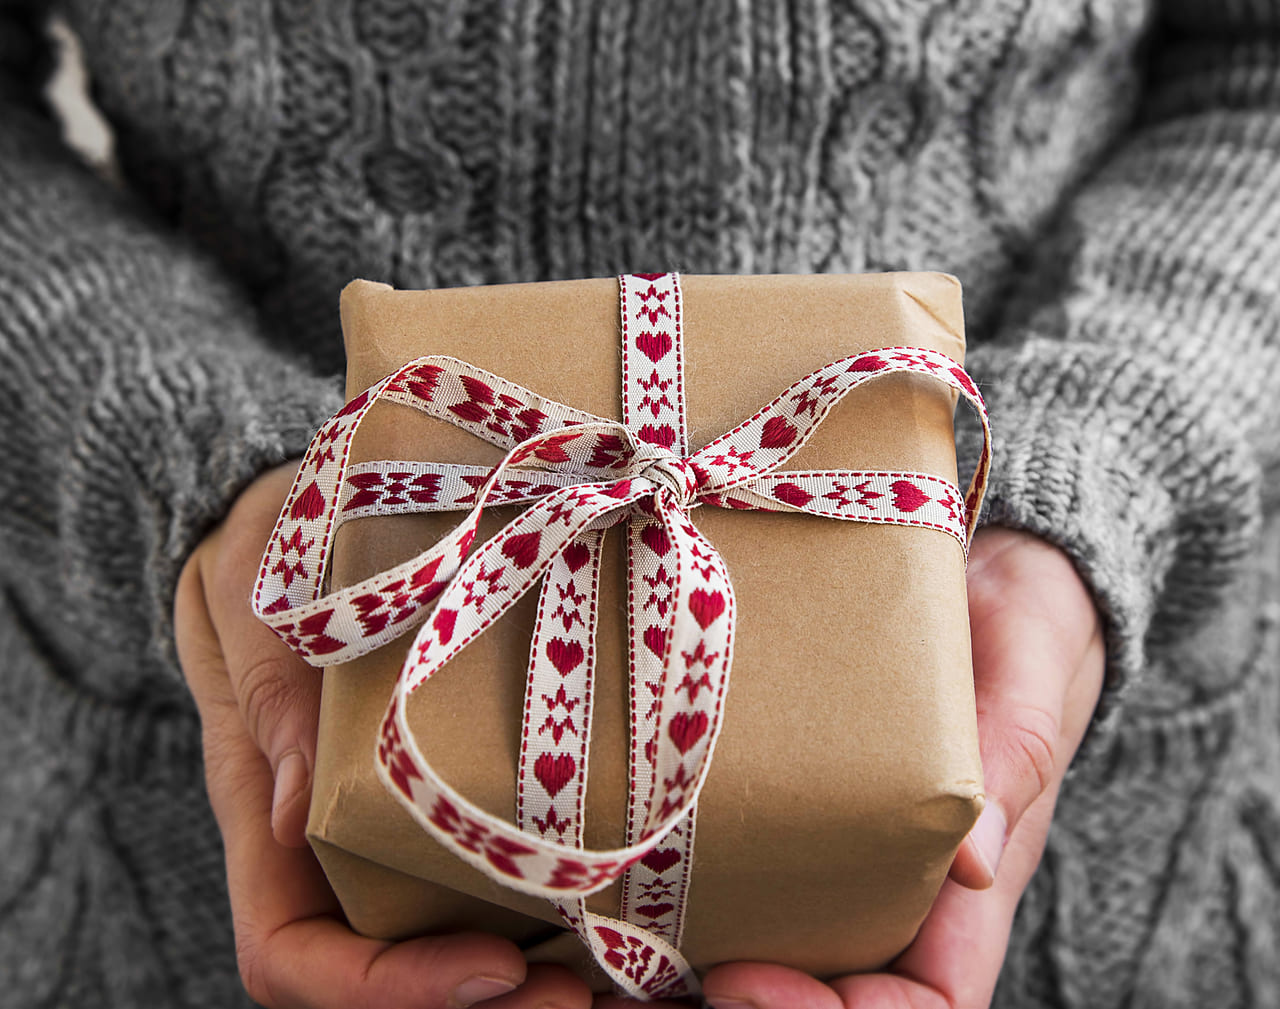 予算4000円 女子会のクリスマスプレゼント交換で喜ばれるアイテム36選 Giftpedia Byギフトモール アニー